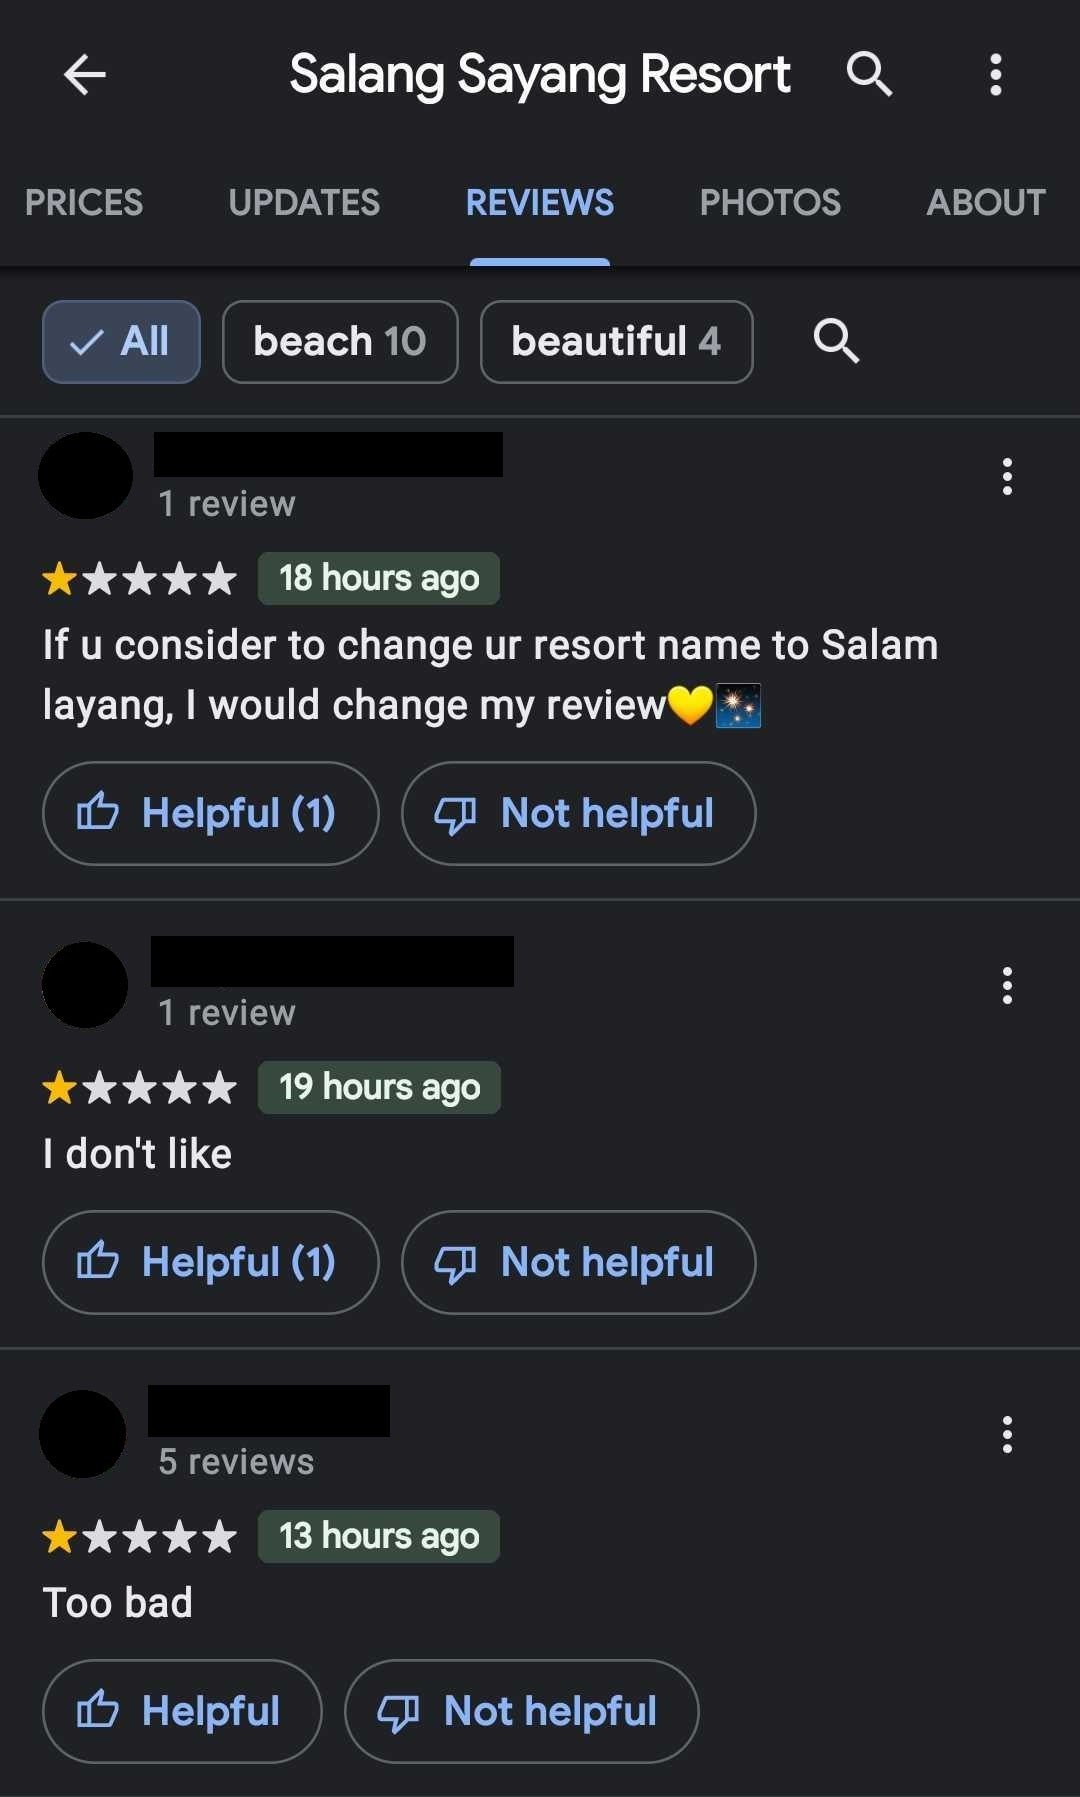 Salang Sayang Resort Spm Students Google Bad Reviews 5